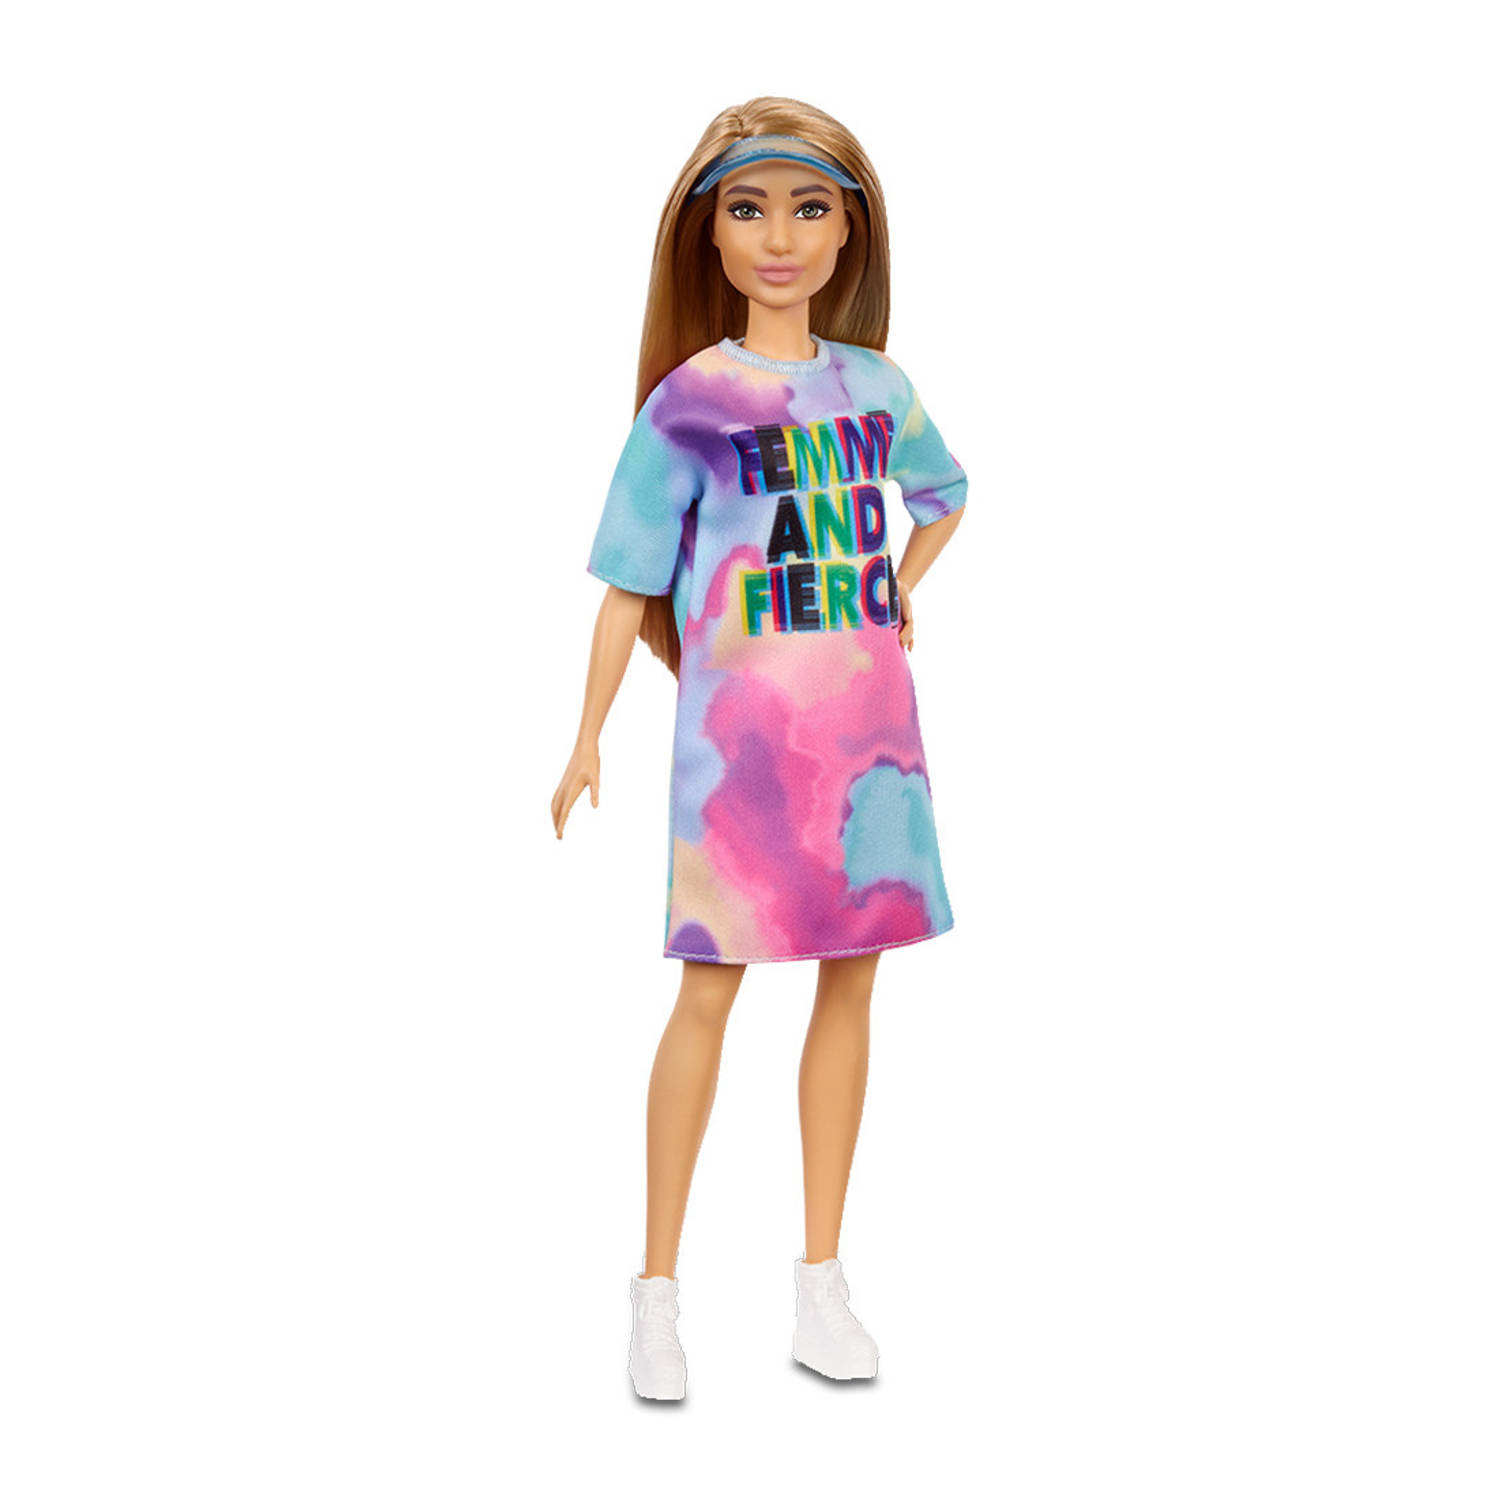 Barbie tienerpop Fashionistas meisjes 30 cm roze-lichtblauw